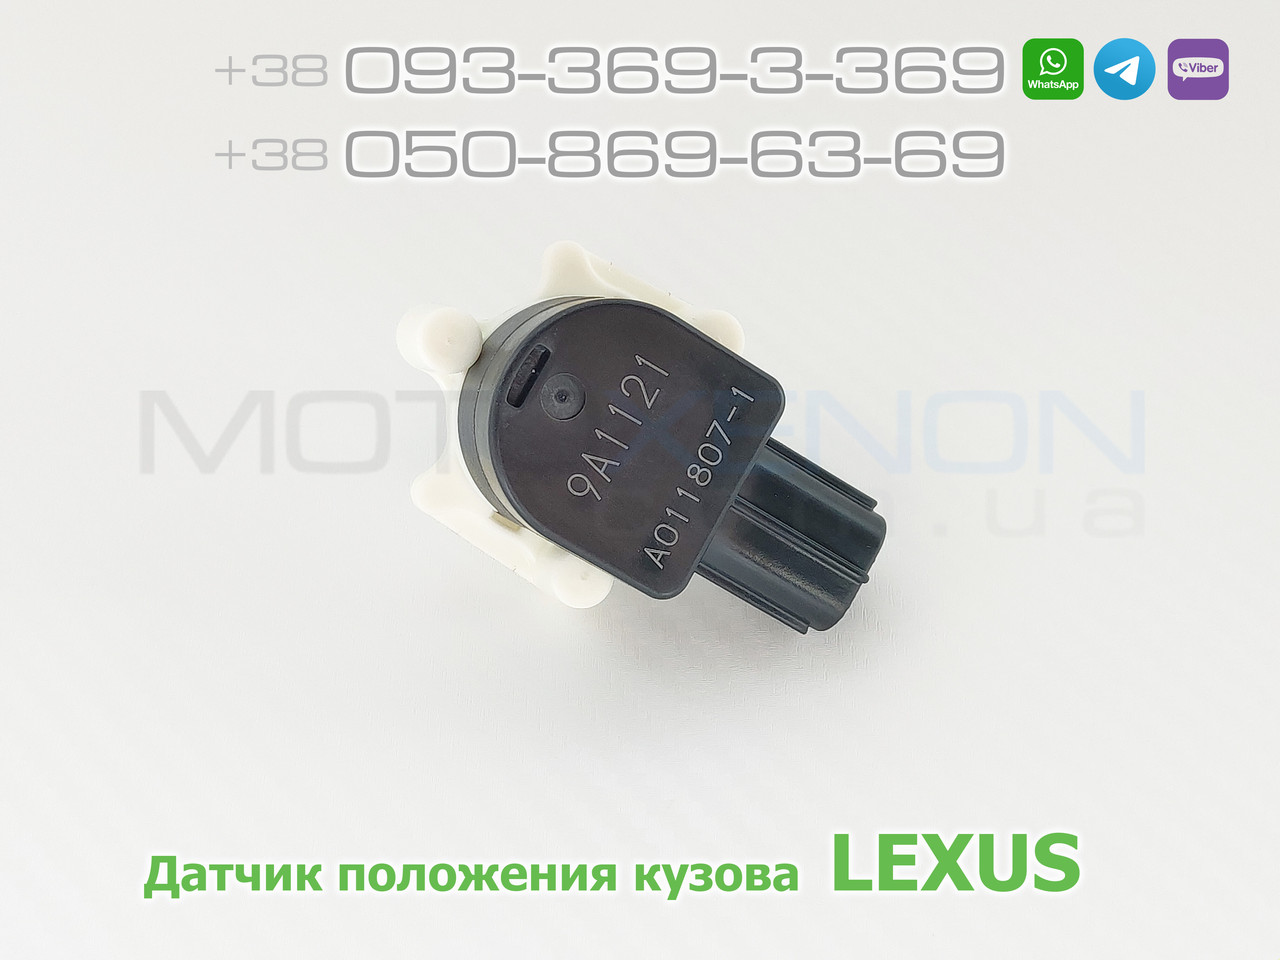 Датчик положения кузова Lexus LS460 передний правый 8940550070 (AFS he